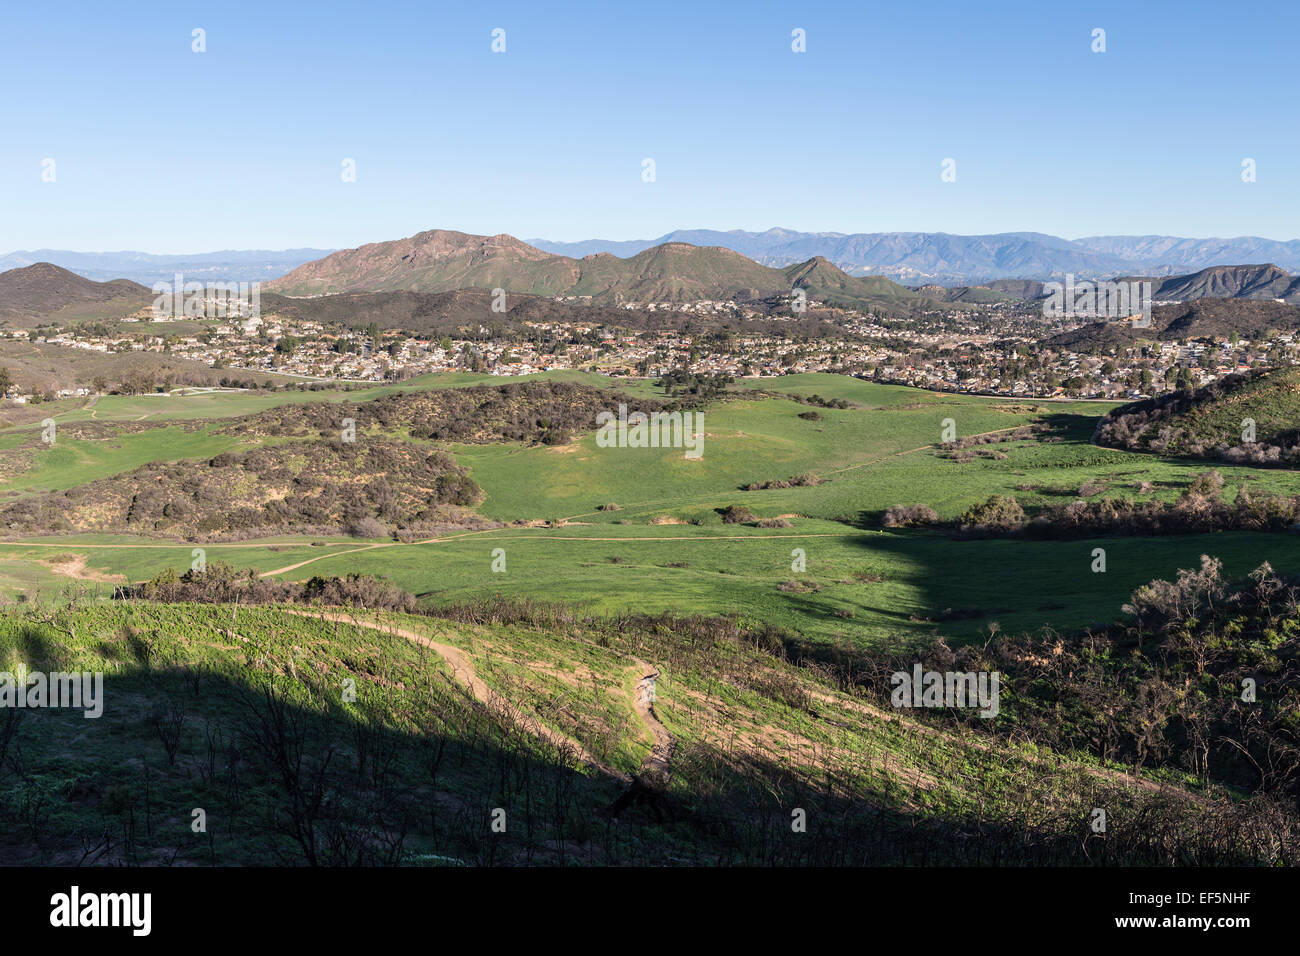 Los Angeles Vorstadtbereich Gehäuse Zersiedelung neben Santa Monica Mountains National Recreation Area Grasland. Stockfoto